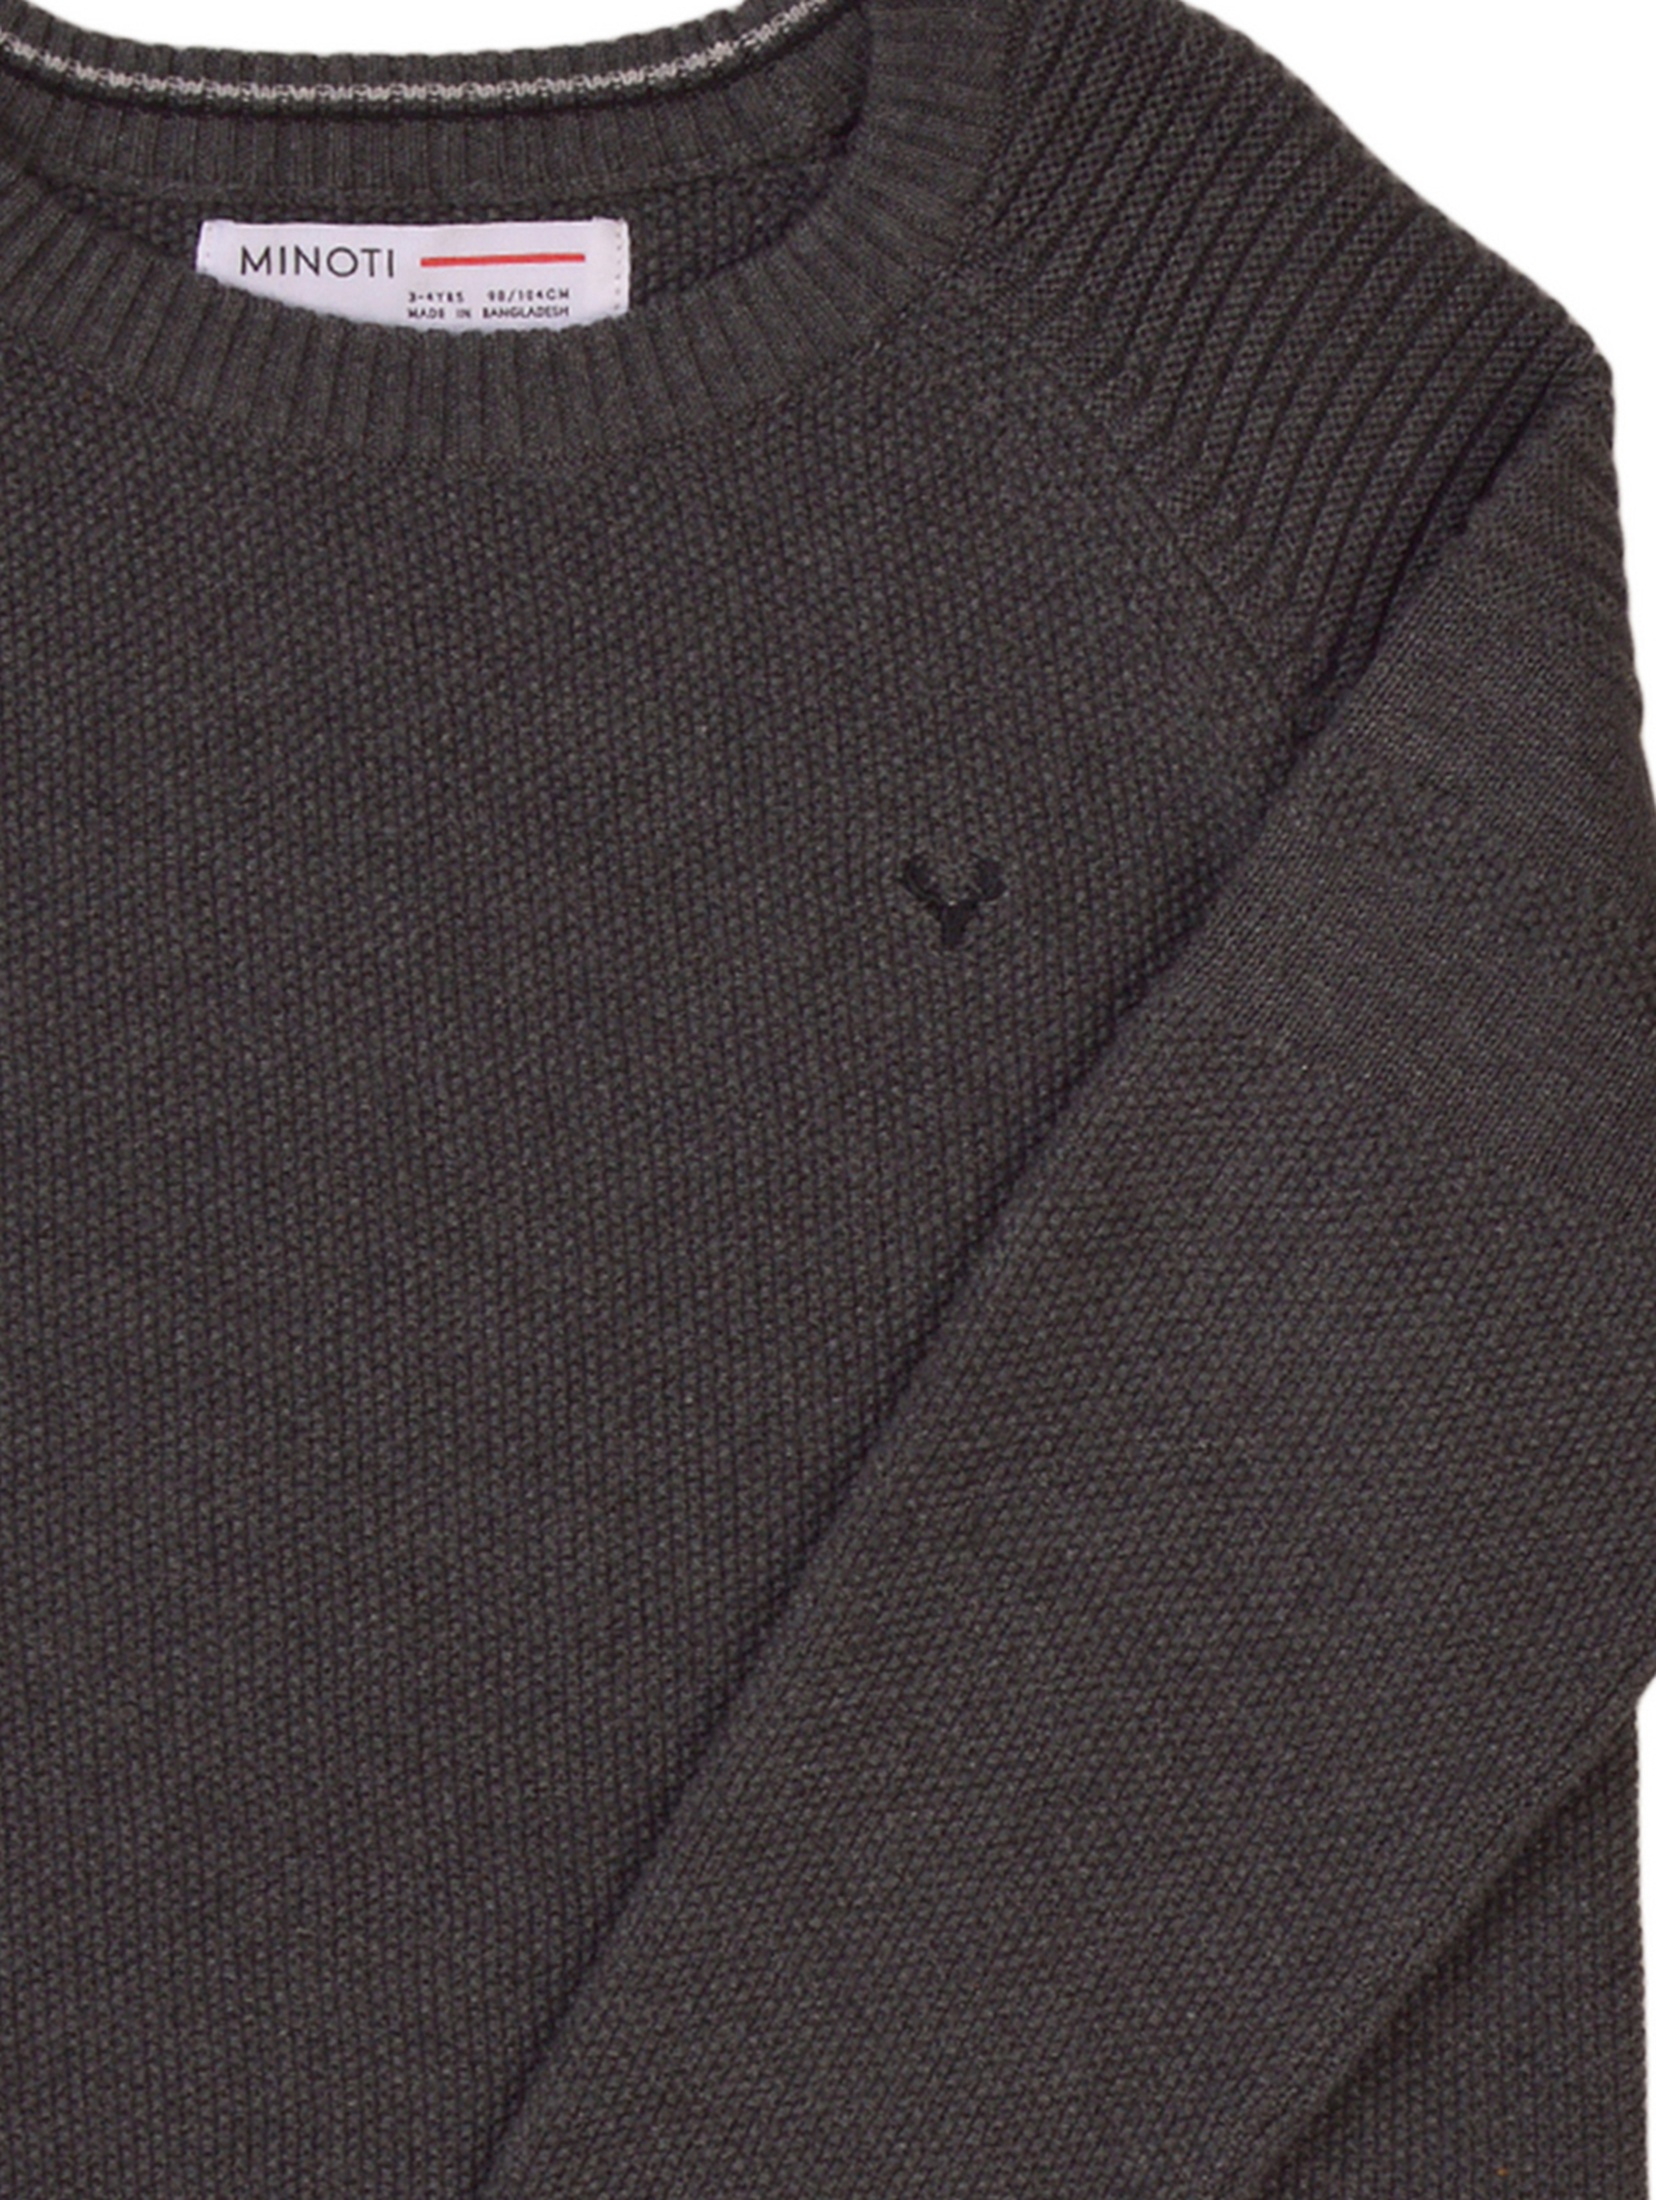 Niemowlęcy klasyczny sweter ozdobiony haftem - szary